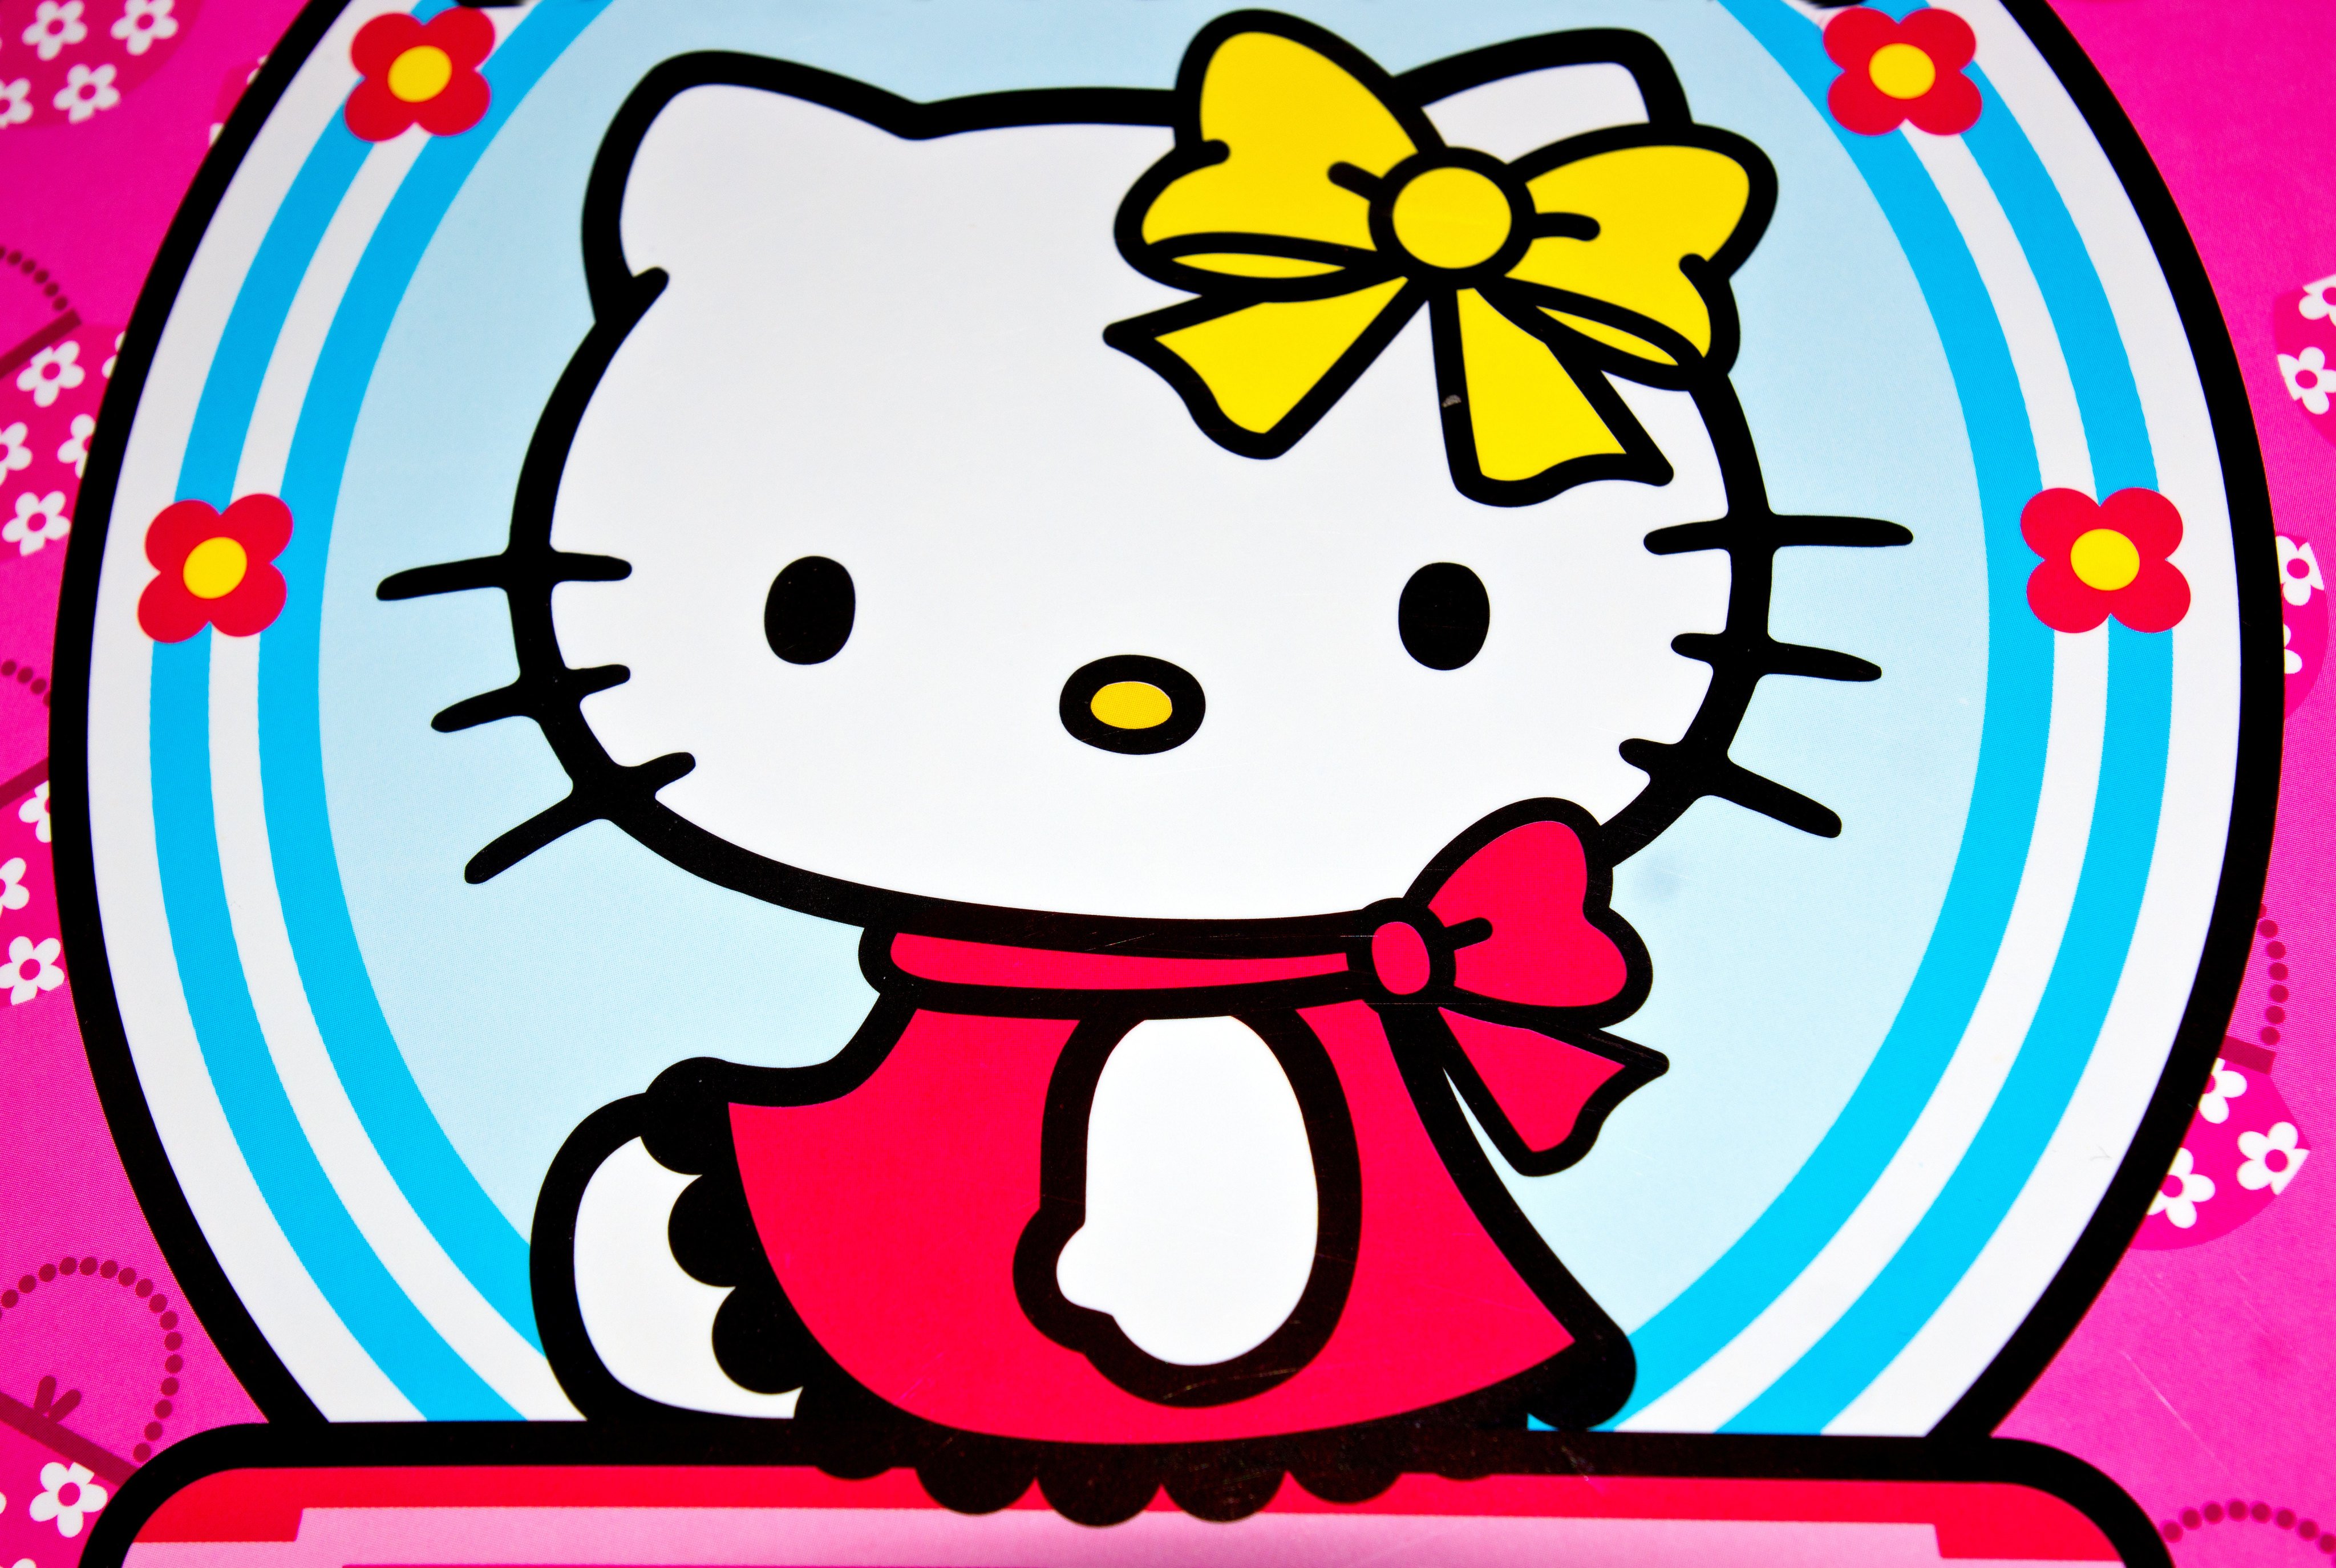 HD wallpaper: Hello Kitty, kittens, cat, Japanese, white